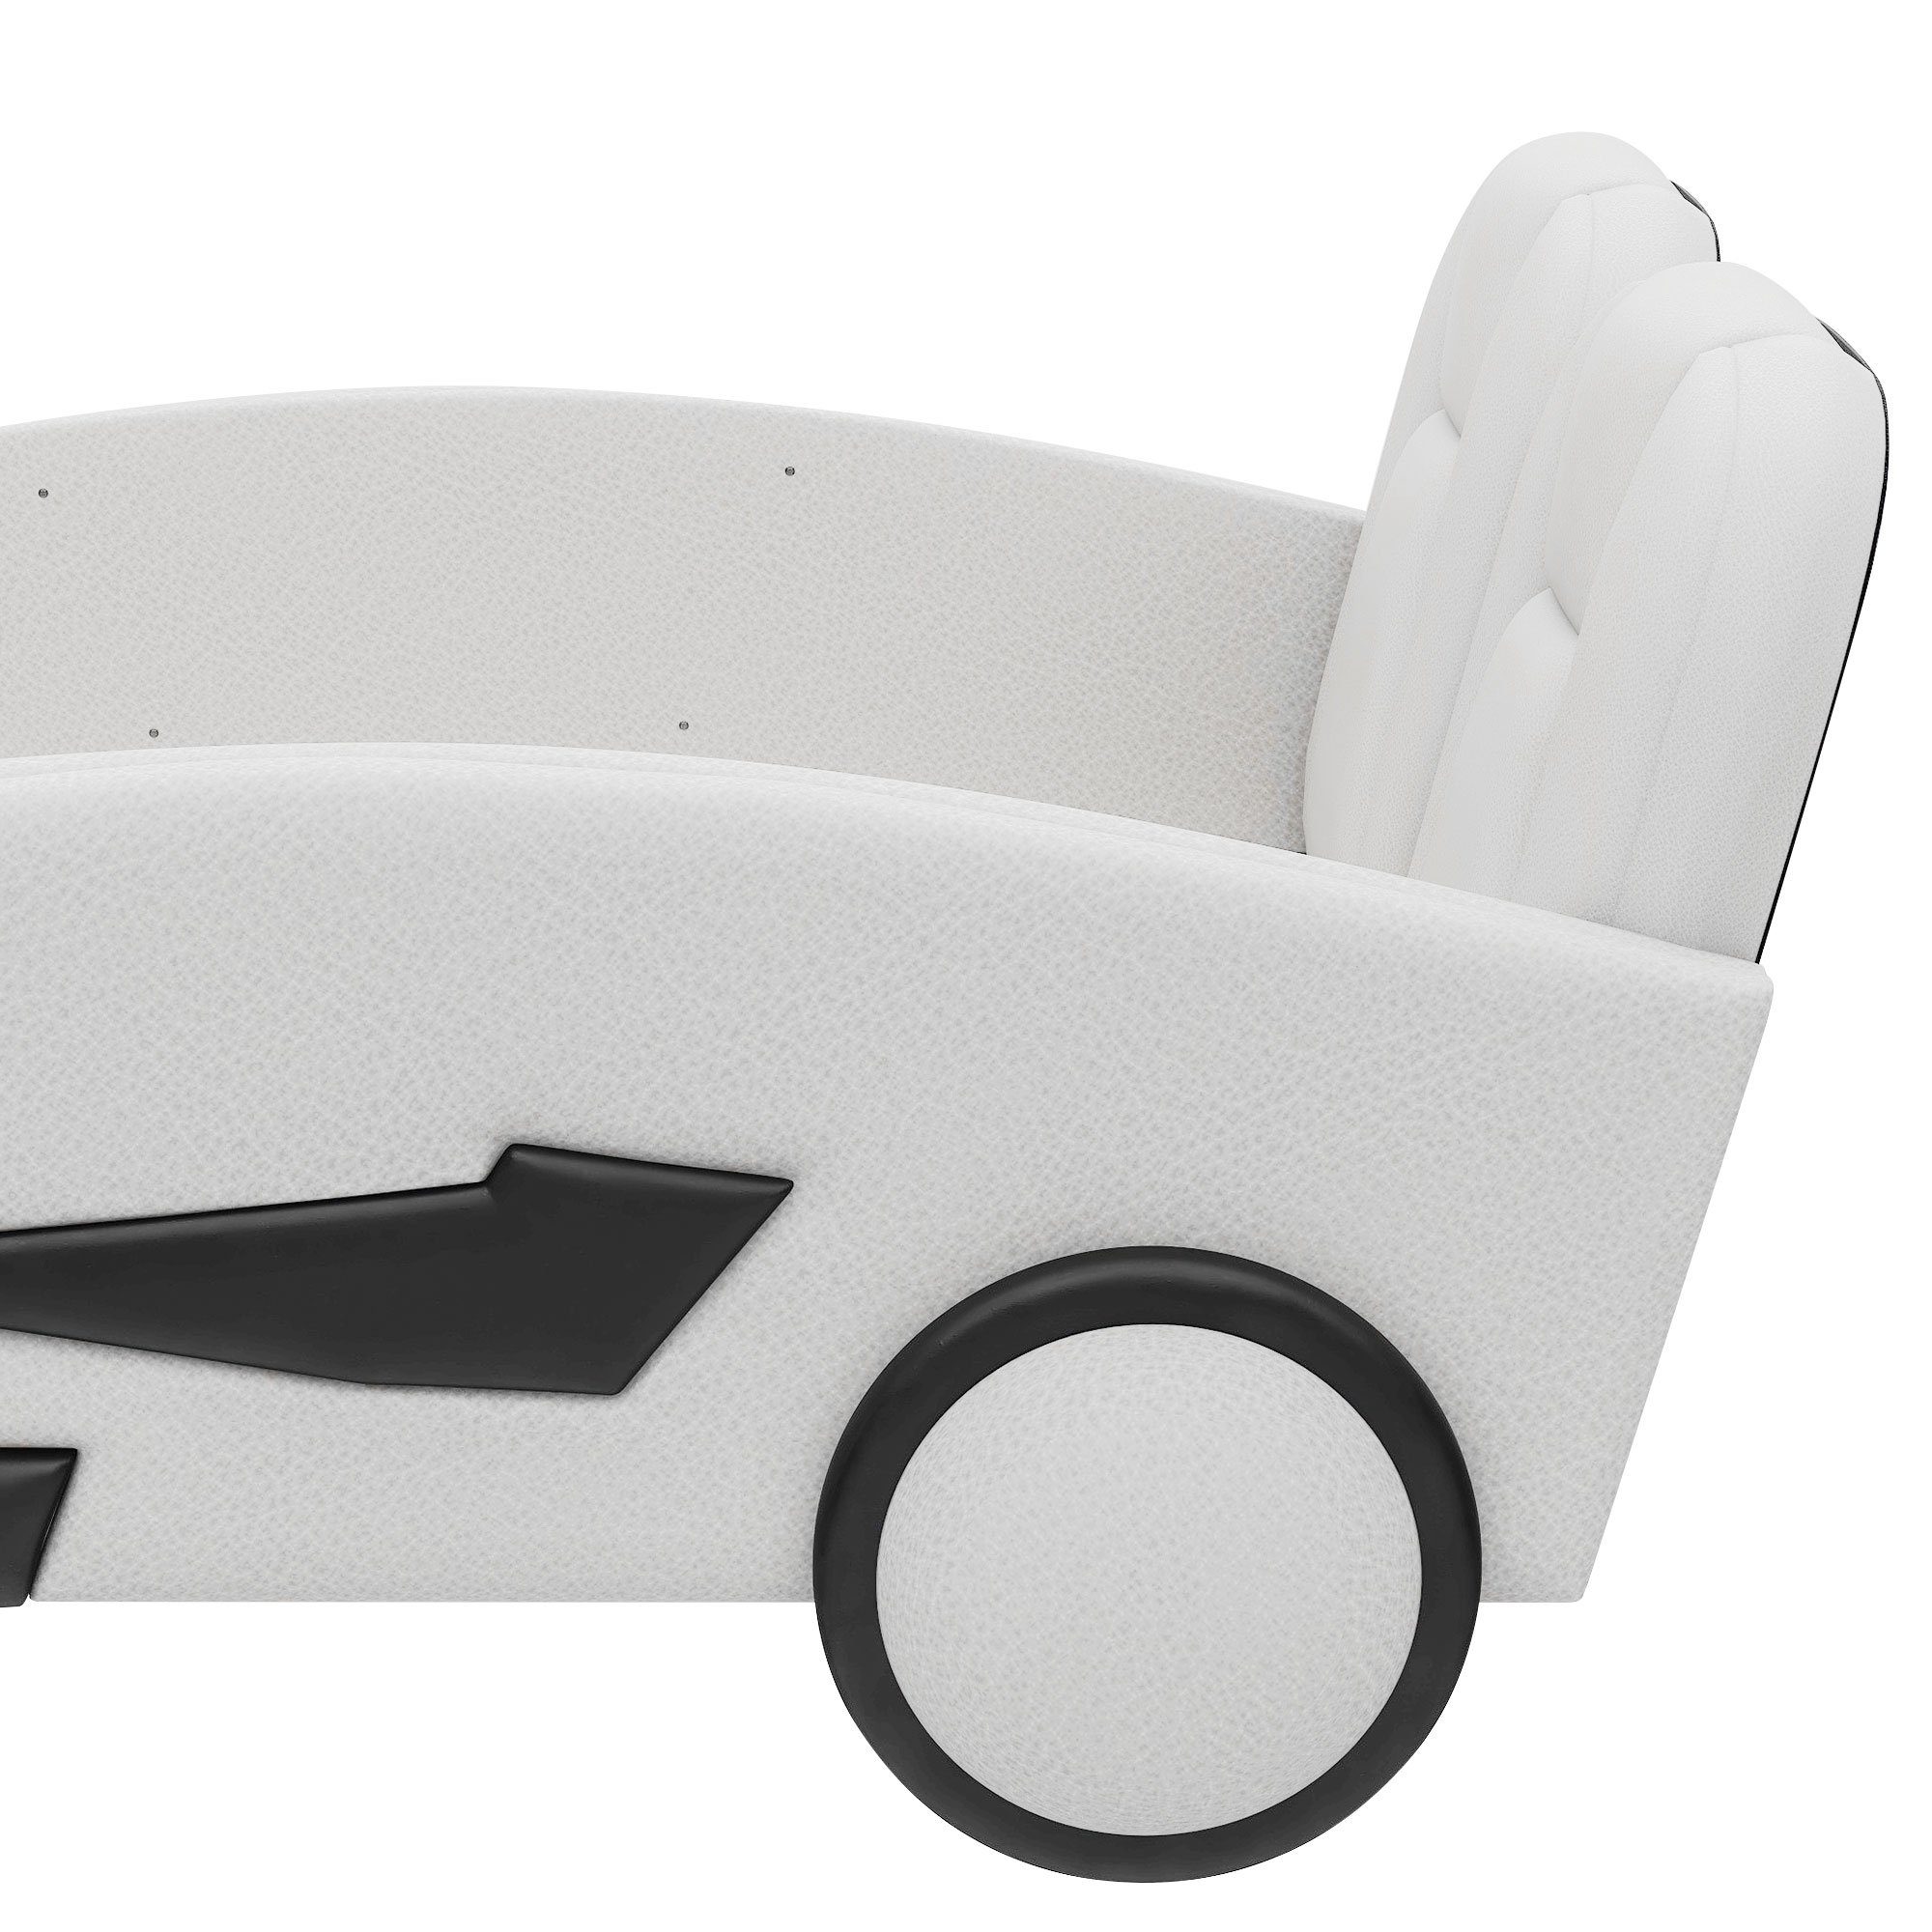 Flieks Autobett, Kinderbett Spielbett Flachbett Kunstleder 90×200cm weiß Rausfallschutz mit